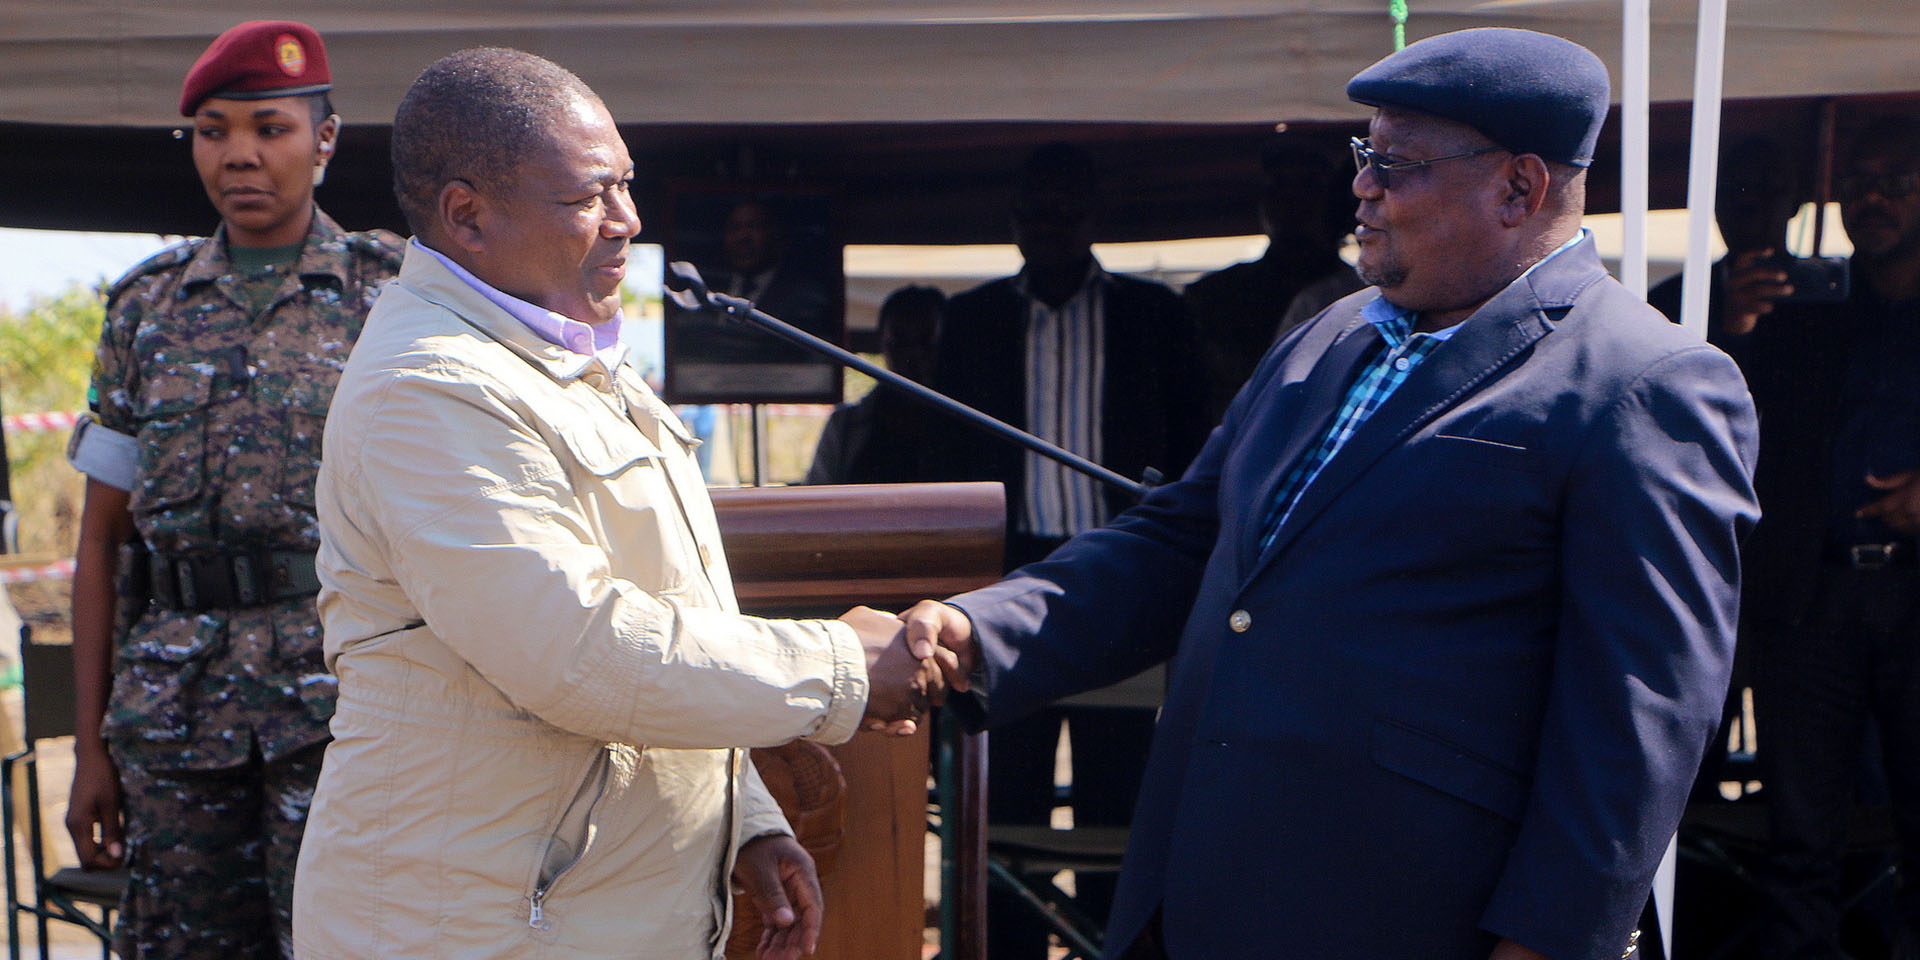  Le président du mouvement RENAMO et le président du Mozambique se serrent la main.